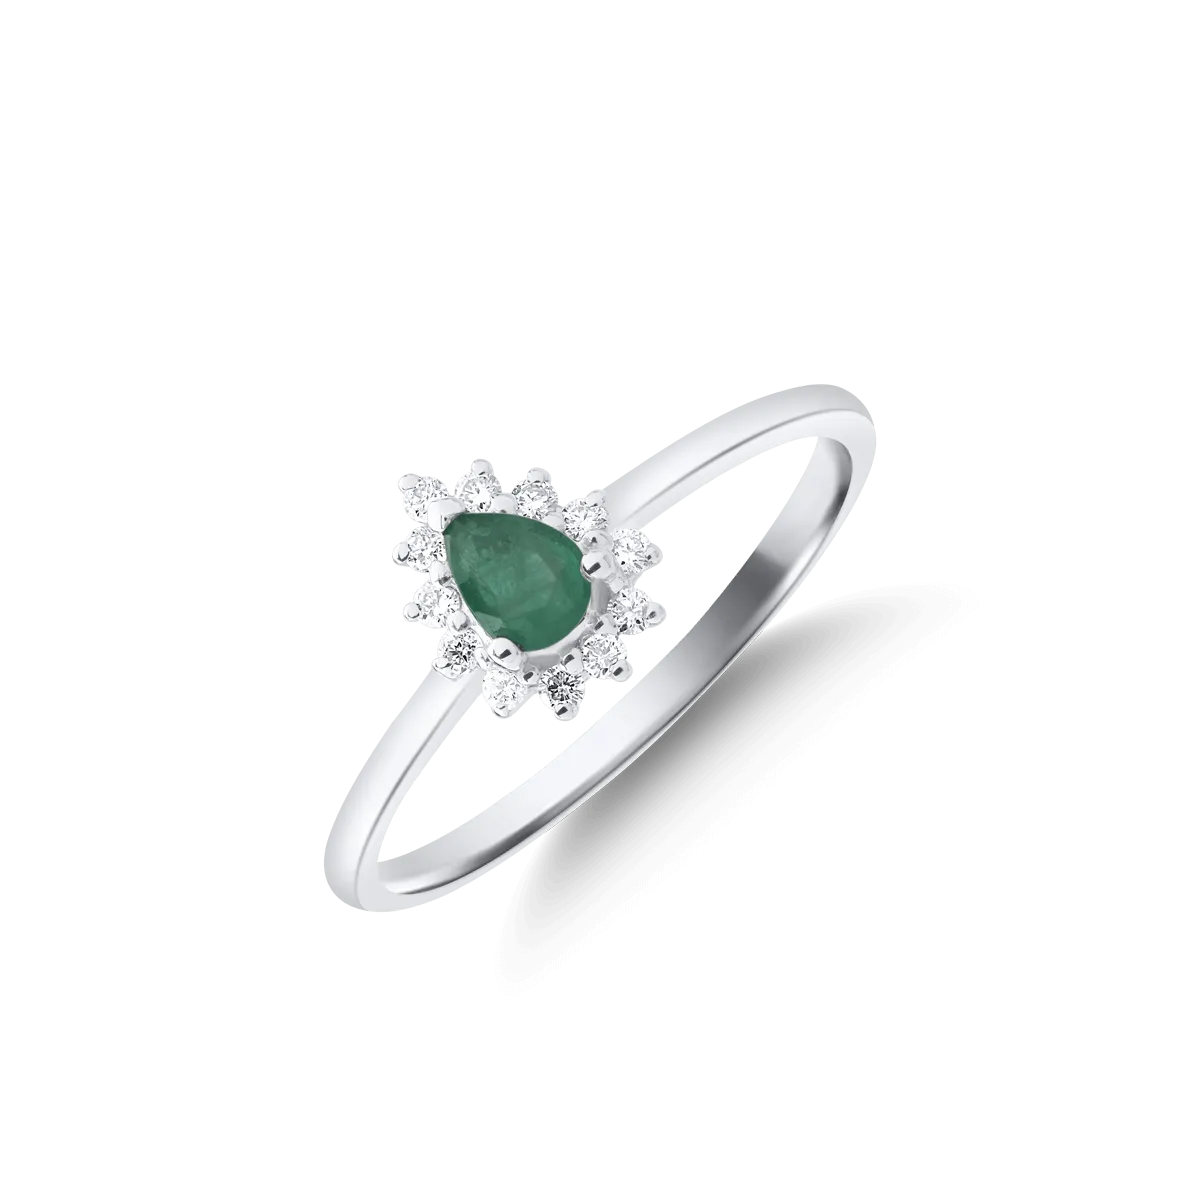 18 karátos fehérarany gyűrű 0.144 karátos smaragddal és 0.083 karátos gyémántokkal